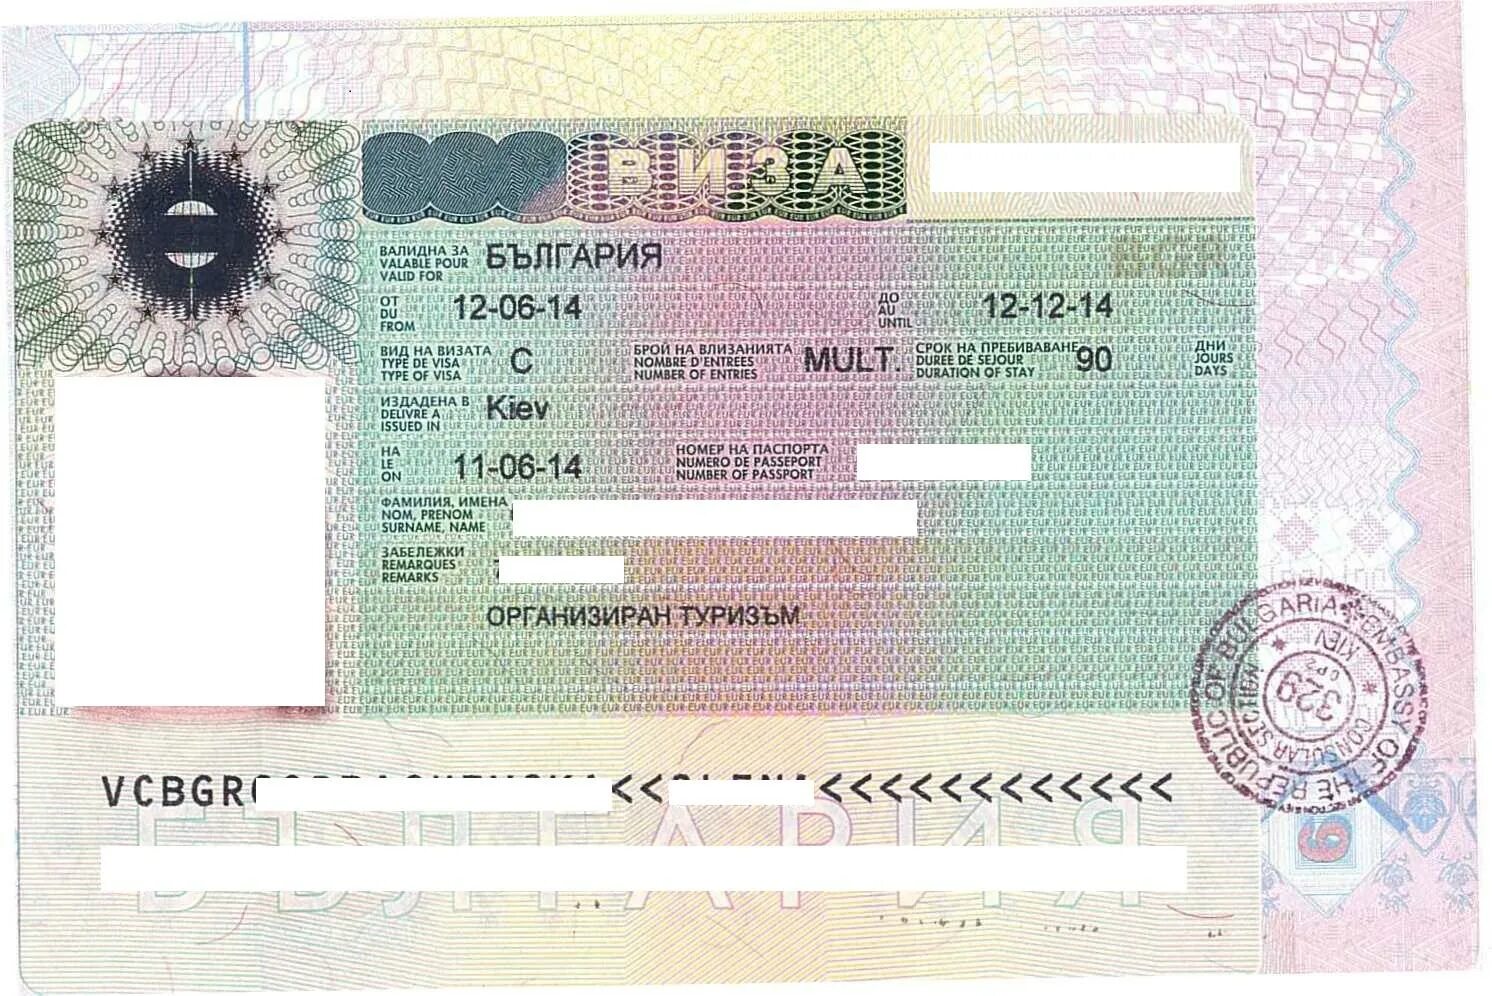 Болгария эксперт виза в болгарию. Болгария виза шенген. Болгарская мультивиза. Шенгенская виза в Австрию. Мультивиза в Болгарию.